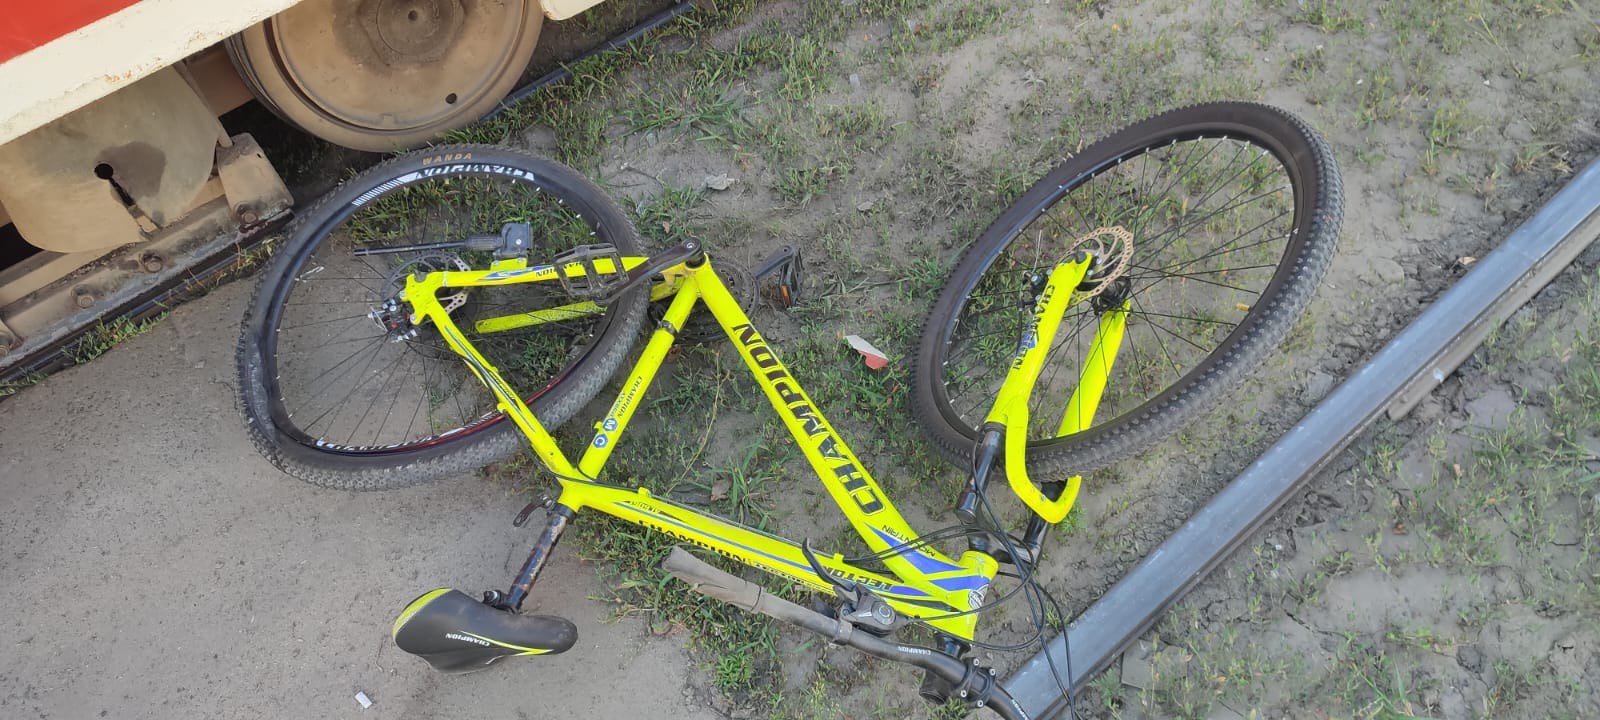 Сбитый велосипедист в Харькове